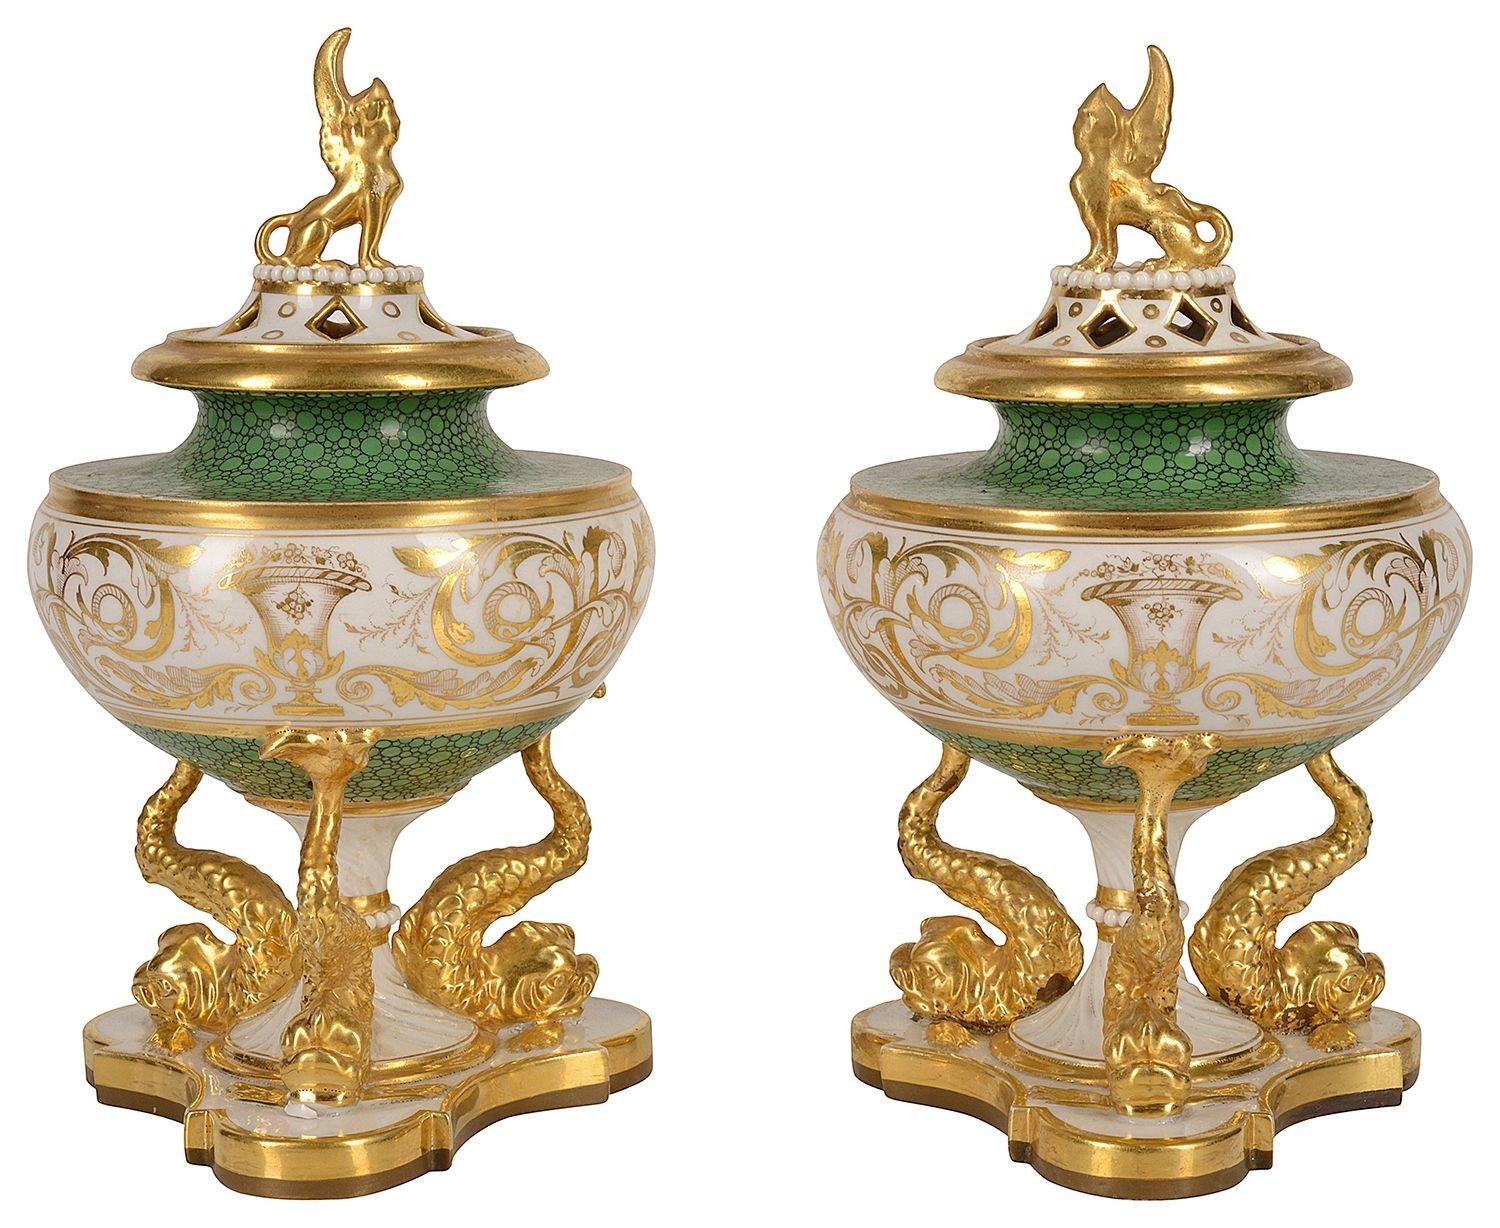 Une paire d'urnes à couvercle en porcelaine Royal Worcester, Flight Barr & Barr, peintes à la main, fine et rare, datant du début du 19e siècle. Chacune avec ce merveilleux fond vert, les couvercles percés avec des fleurons sphériques dorés, un